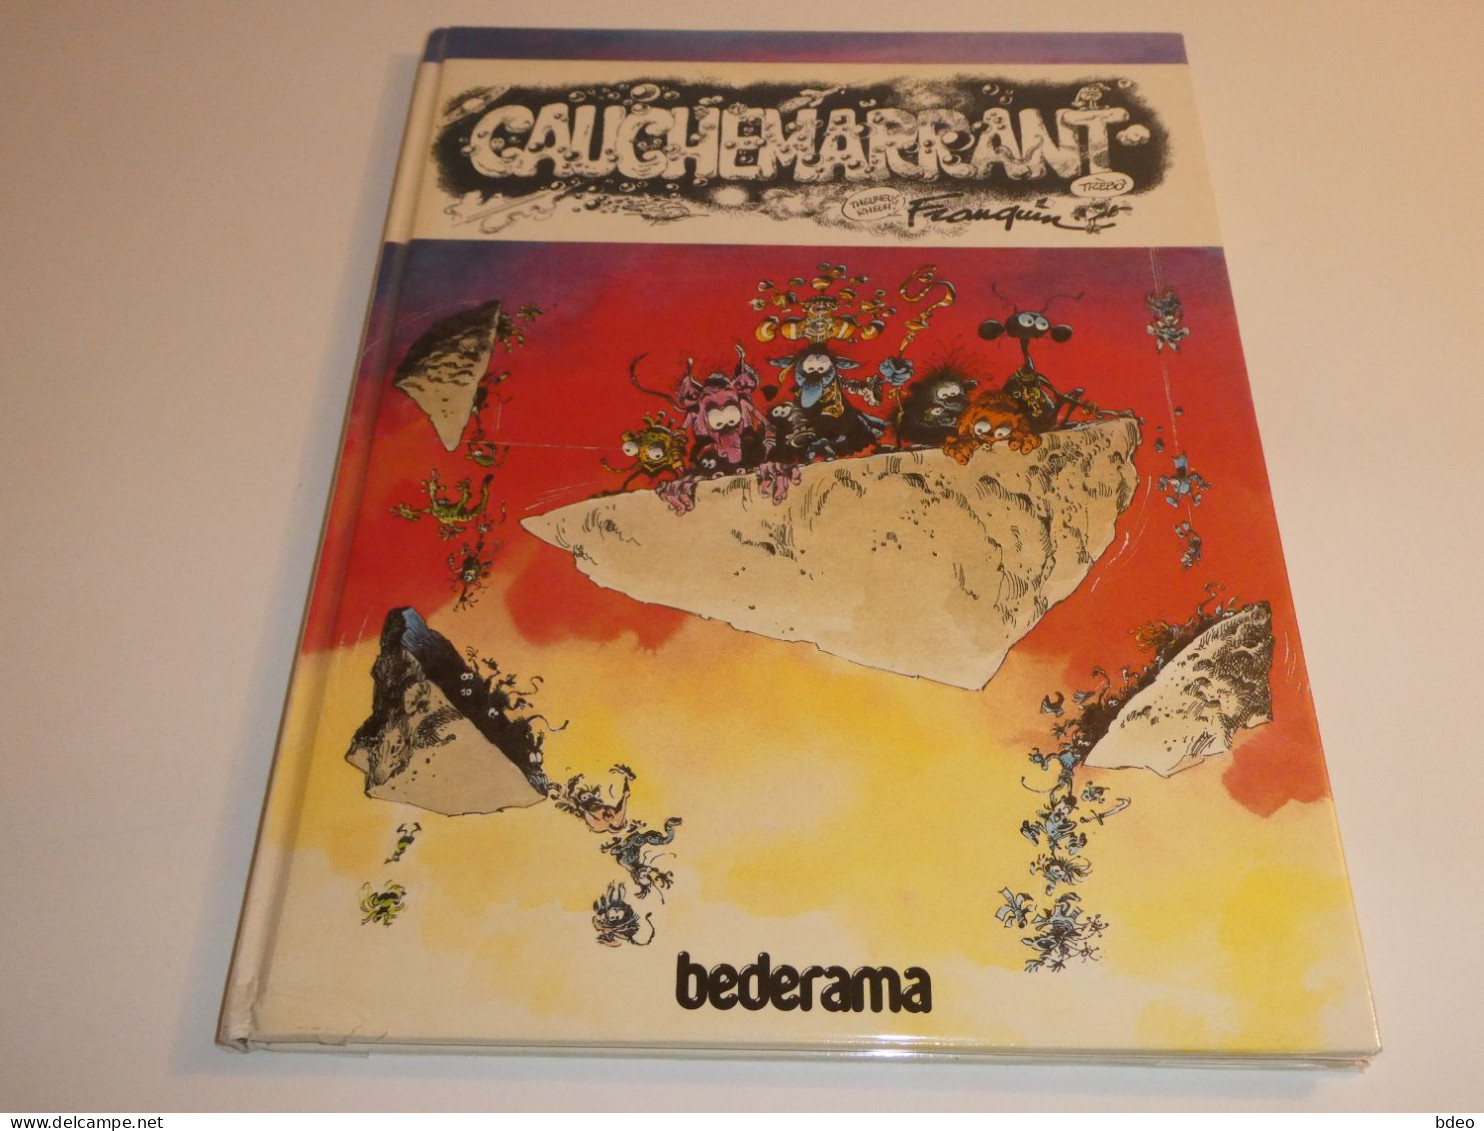 CAUCHEMARRANT / FRANQUIN / BE - Ediciones Originales - Albumes En Francés